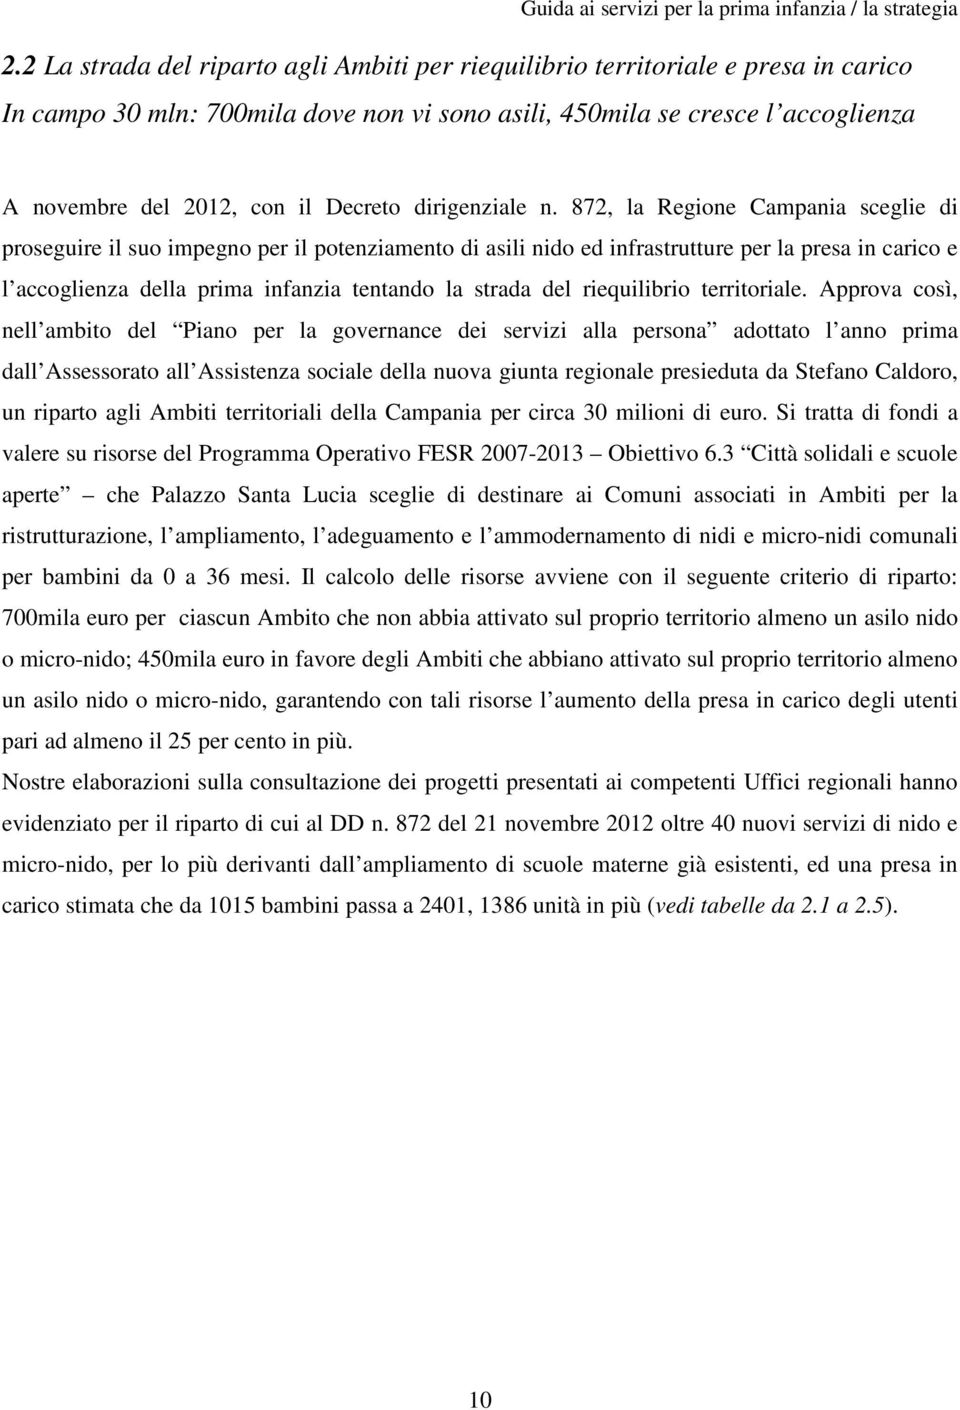 872, la Regione Campania sceglie di proseguire il suo impegno per il potenziamento di asili nido ed infrastrutture per la presa in carico e l accoglienza della prima infanzia tentando la strada del